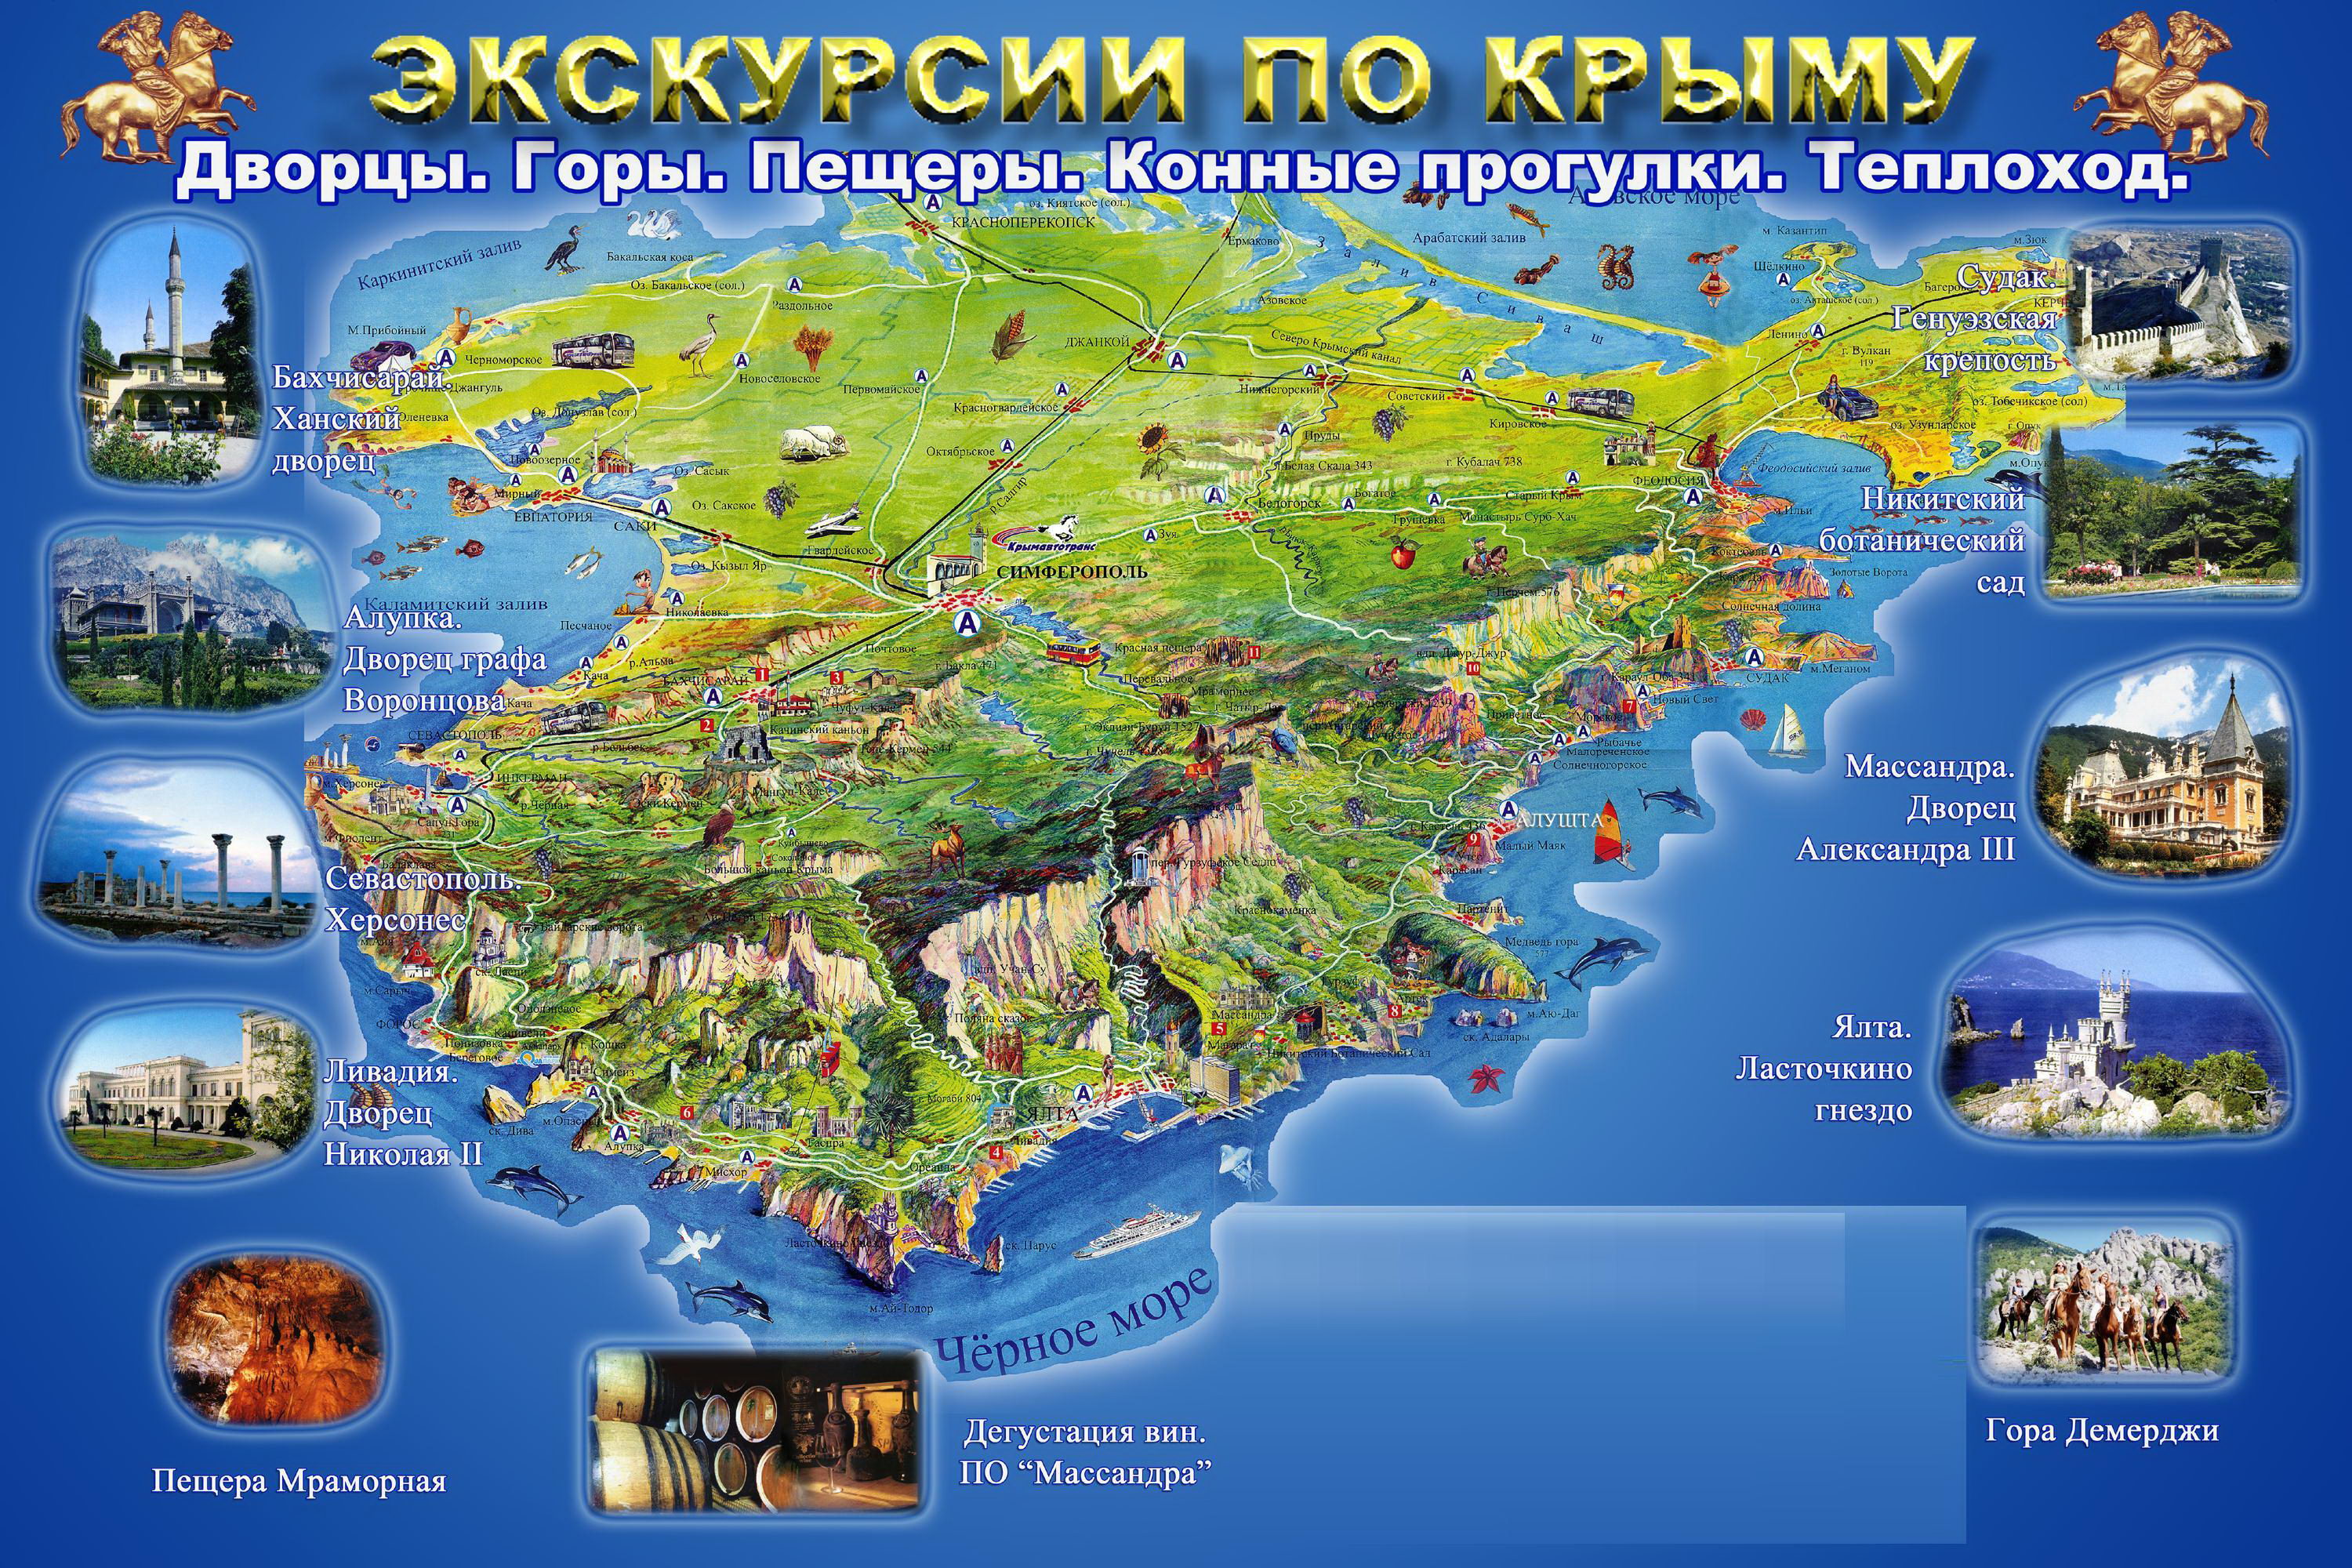 Где отдохнуть в Крыму?